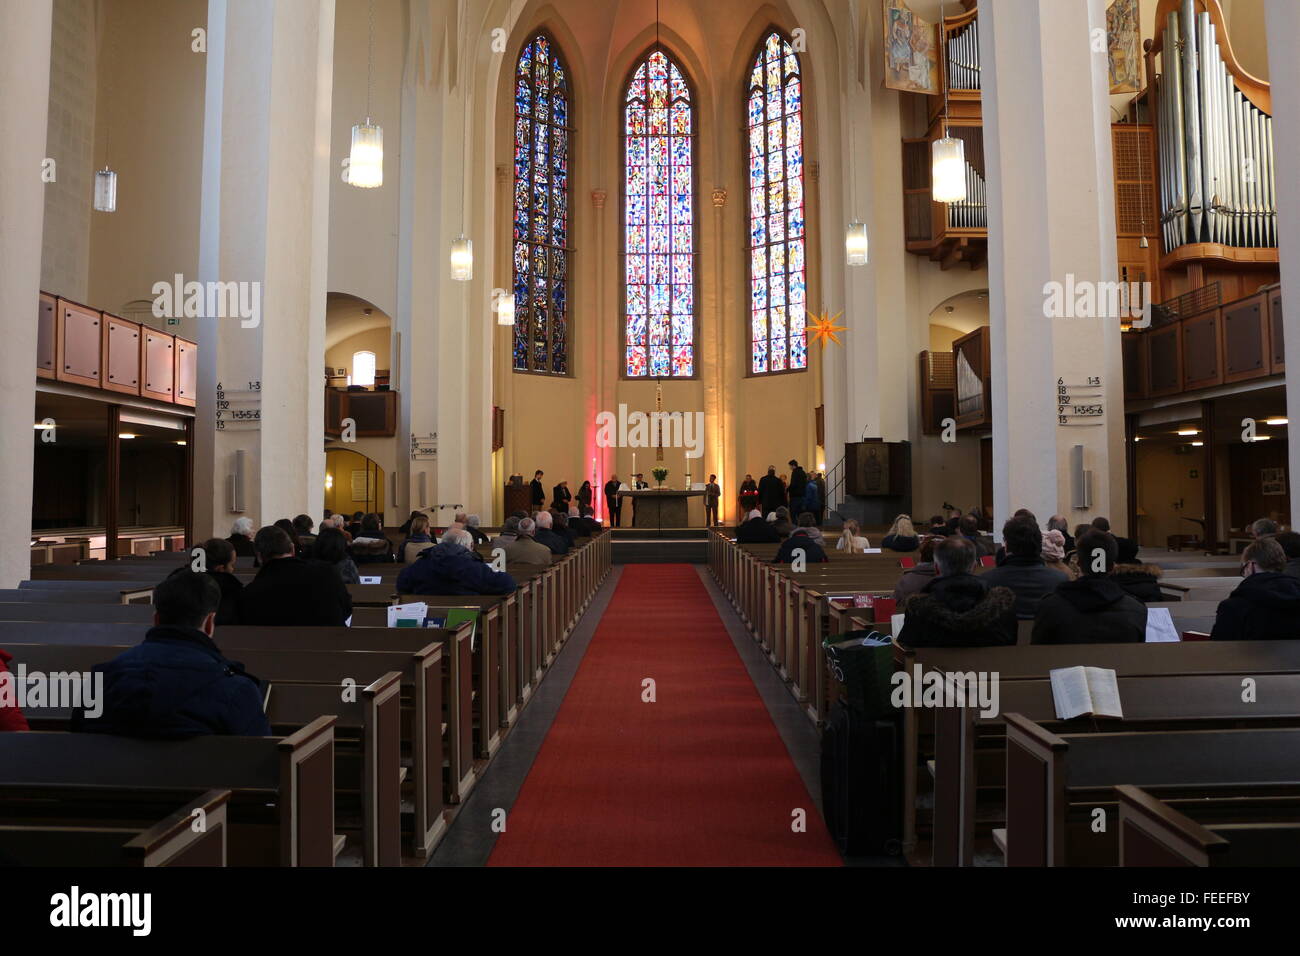 Schauen Sie in der evangelischen Kirche "Kreuzkirche" in Bonn, Deutschland Stockfoto